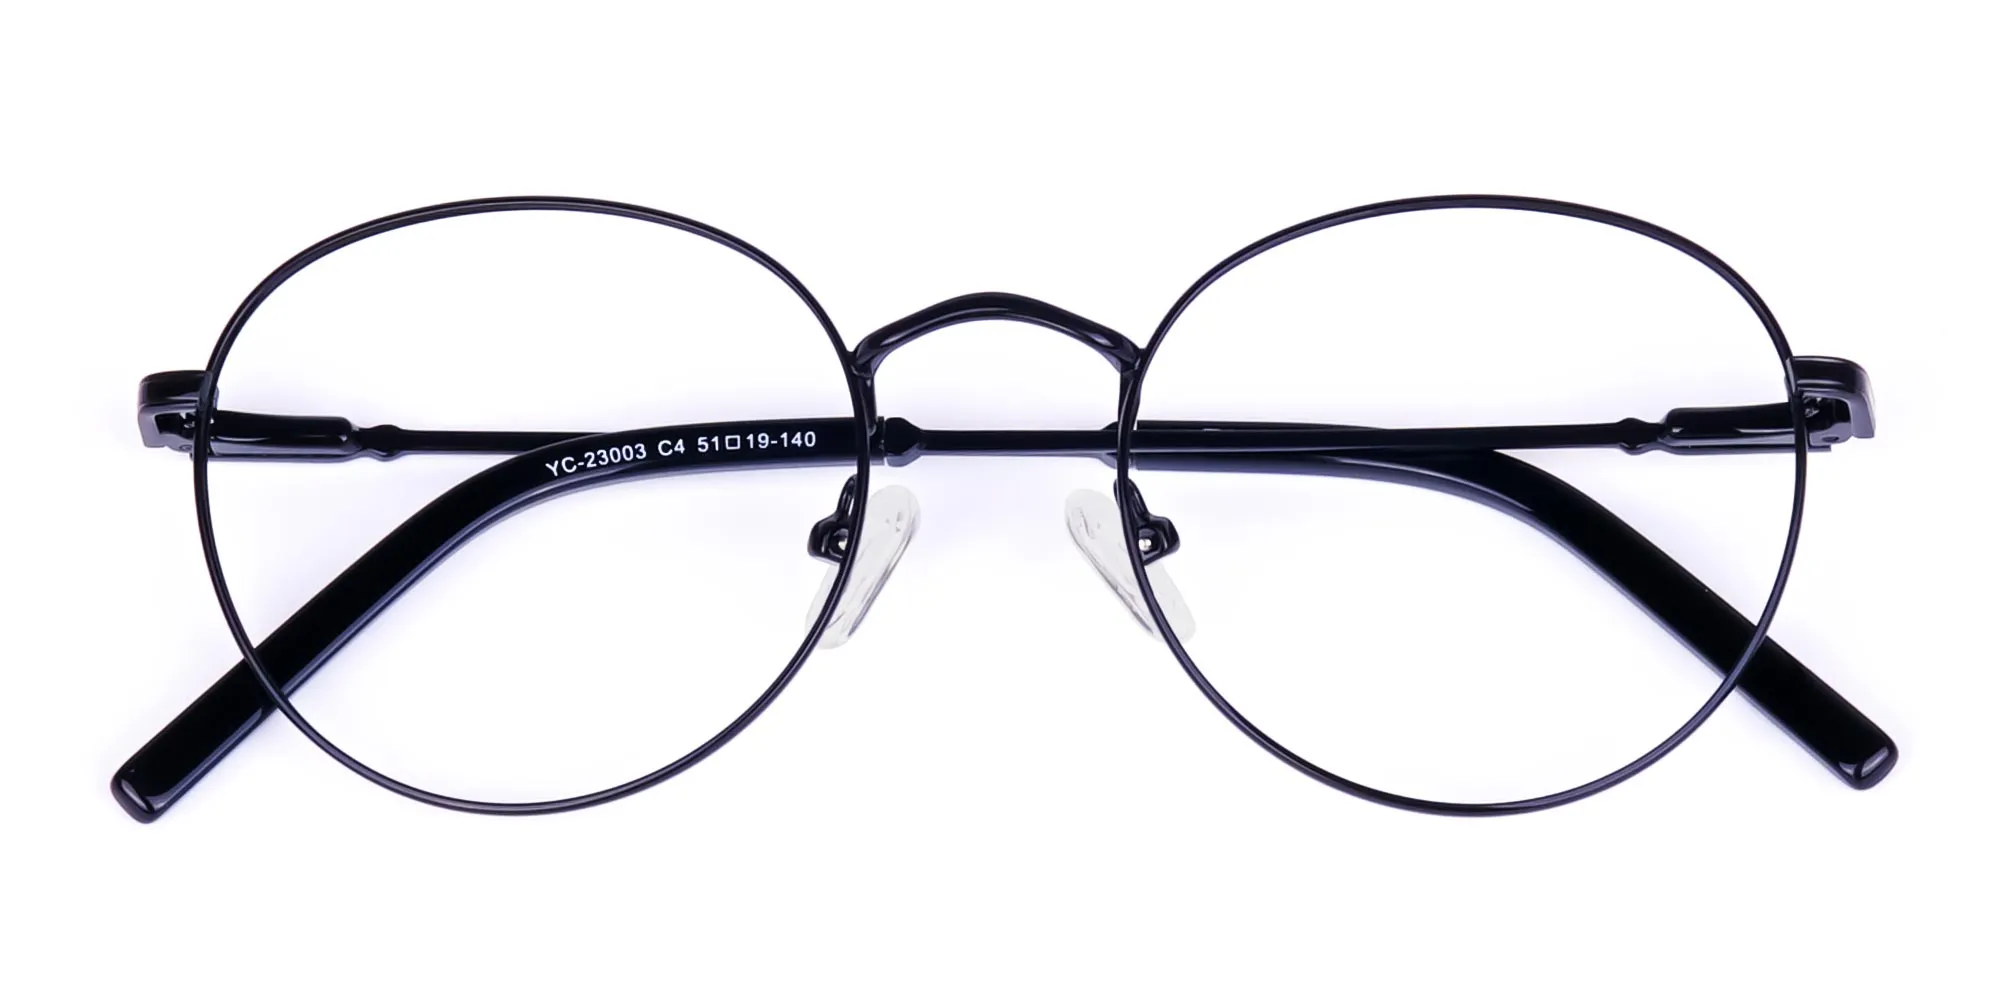 Designer Black Round Glasses Frame-2